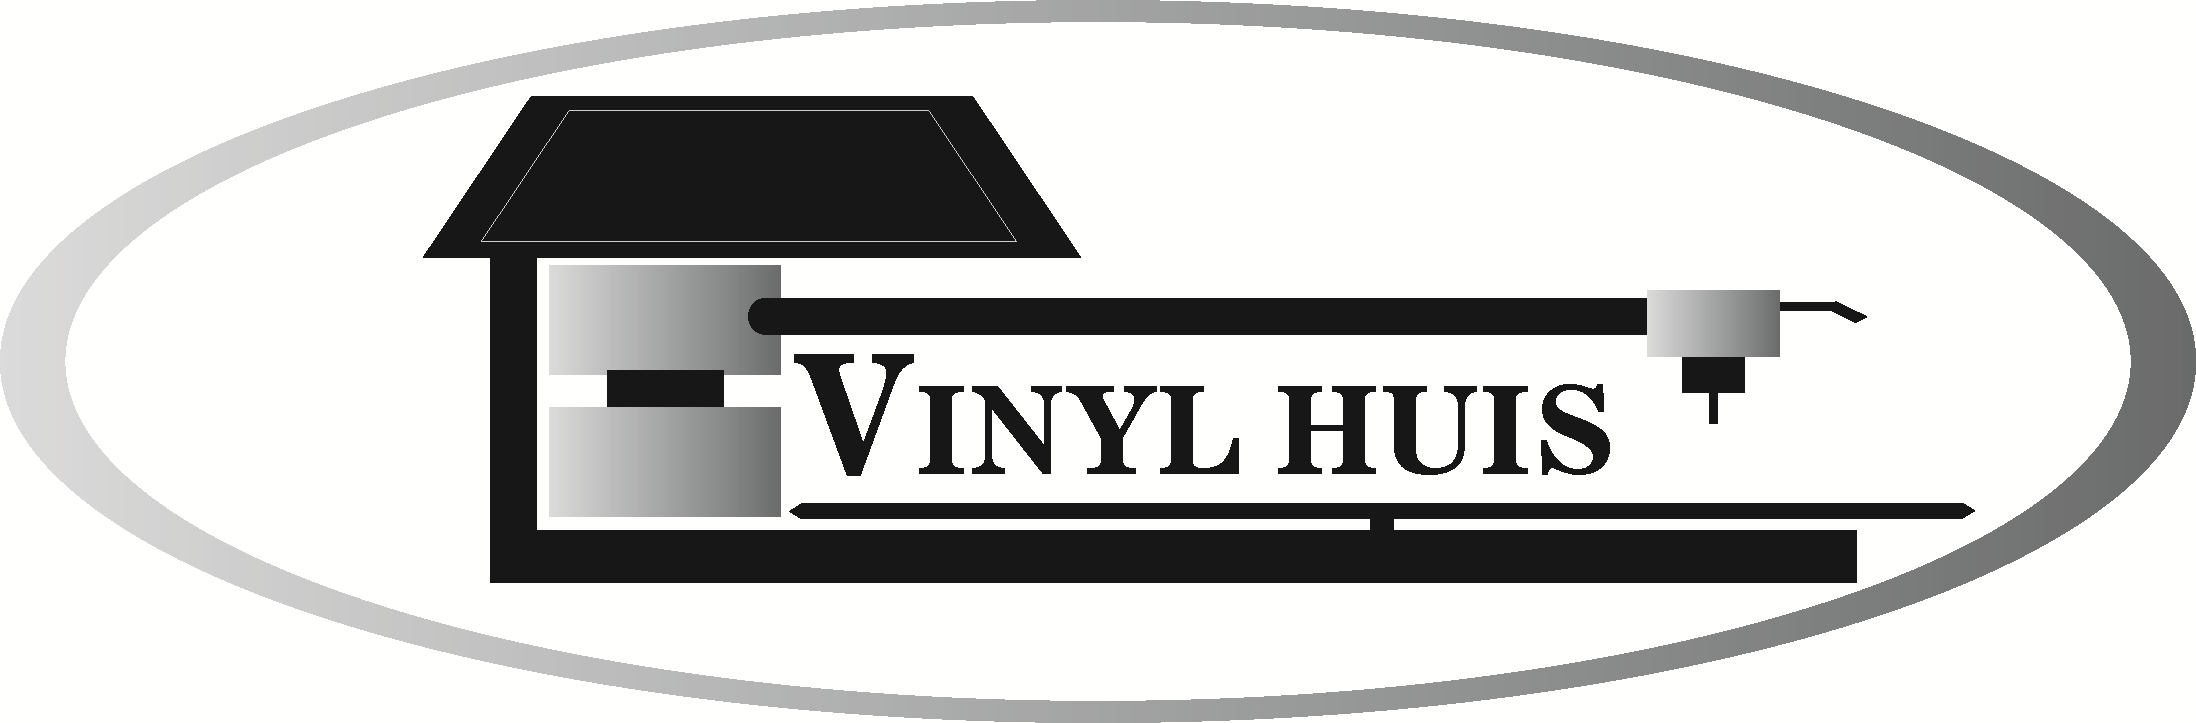 Vinylhuis